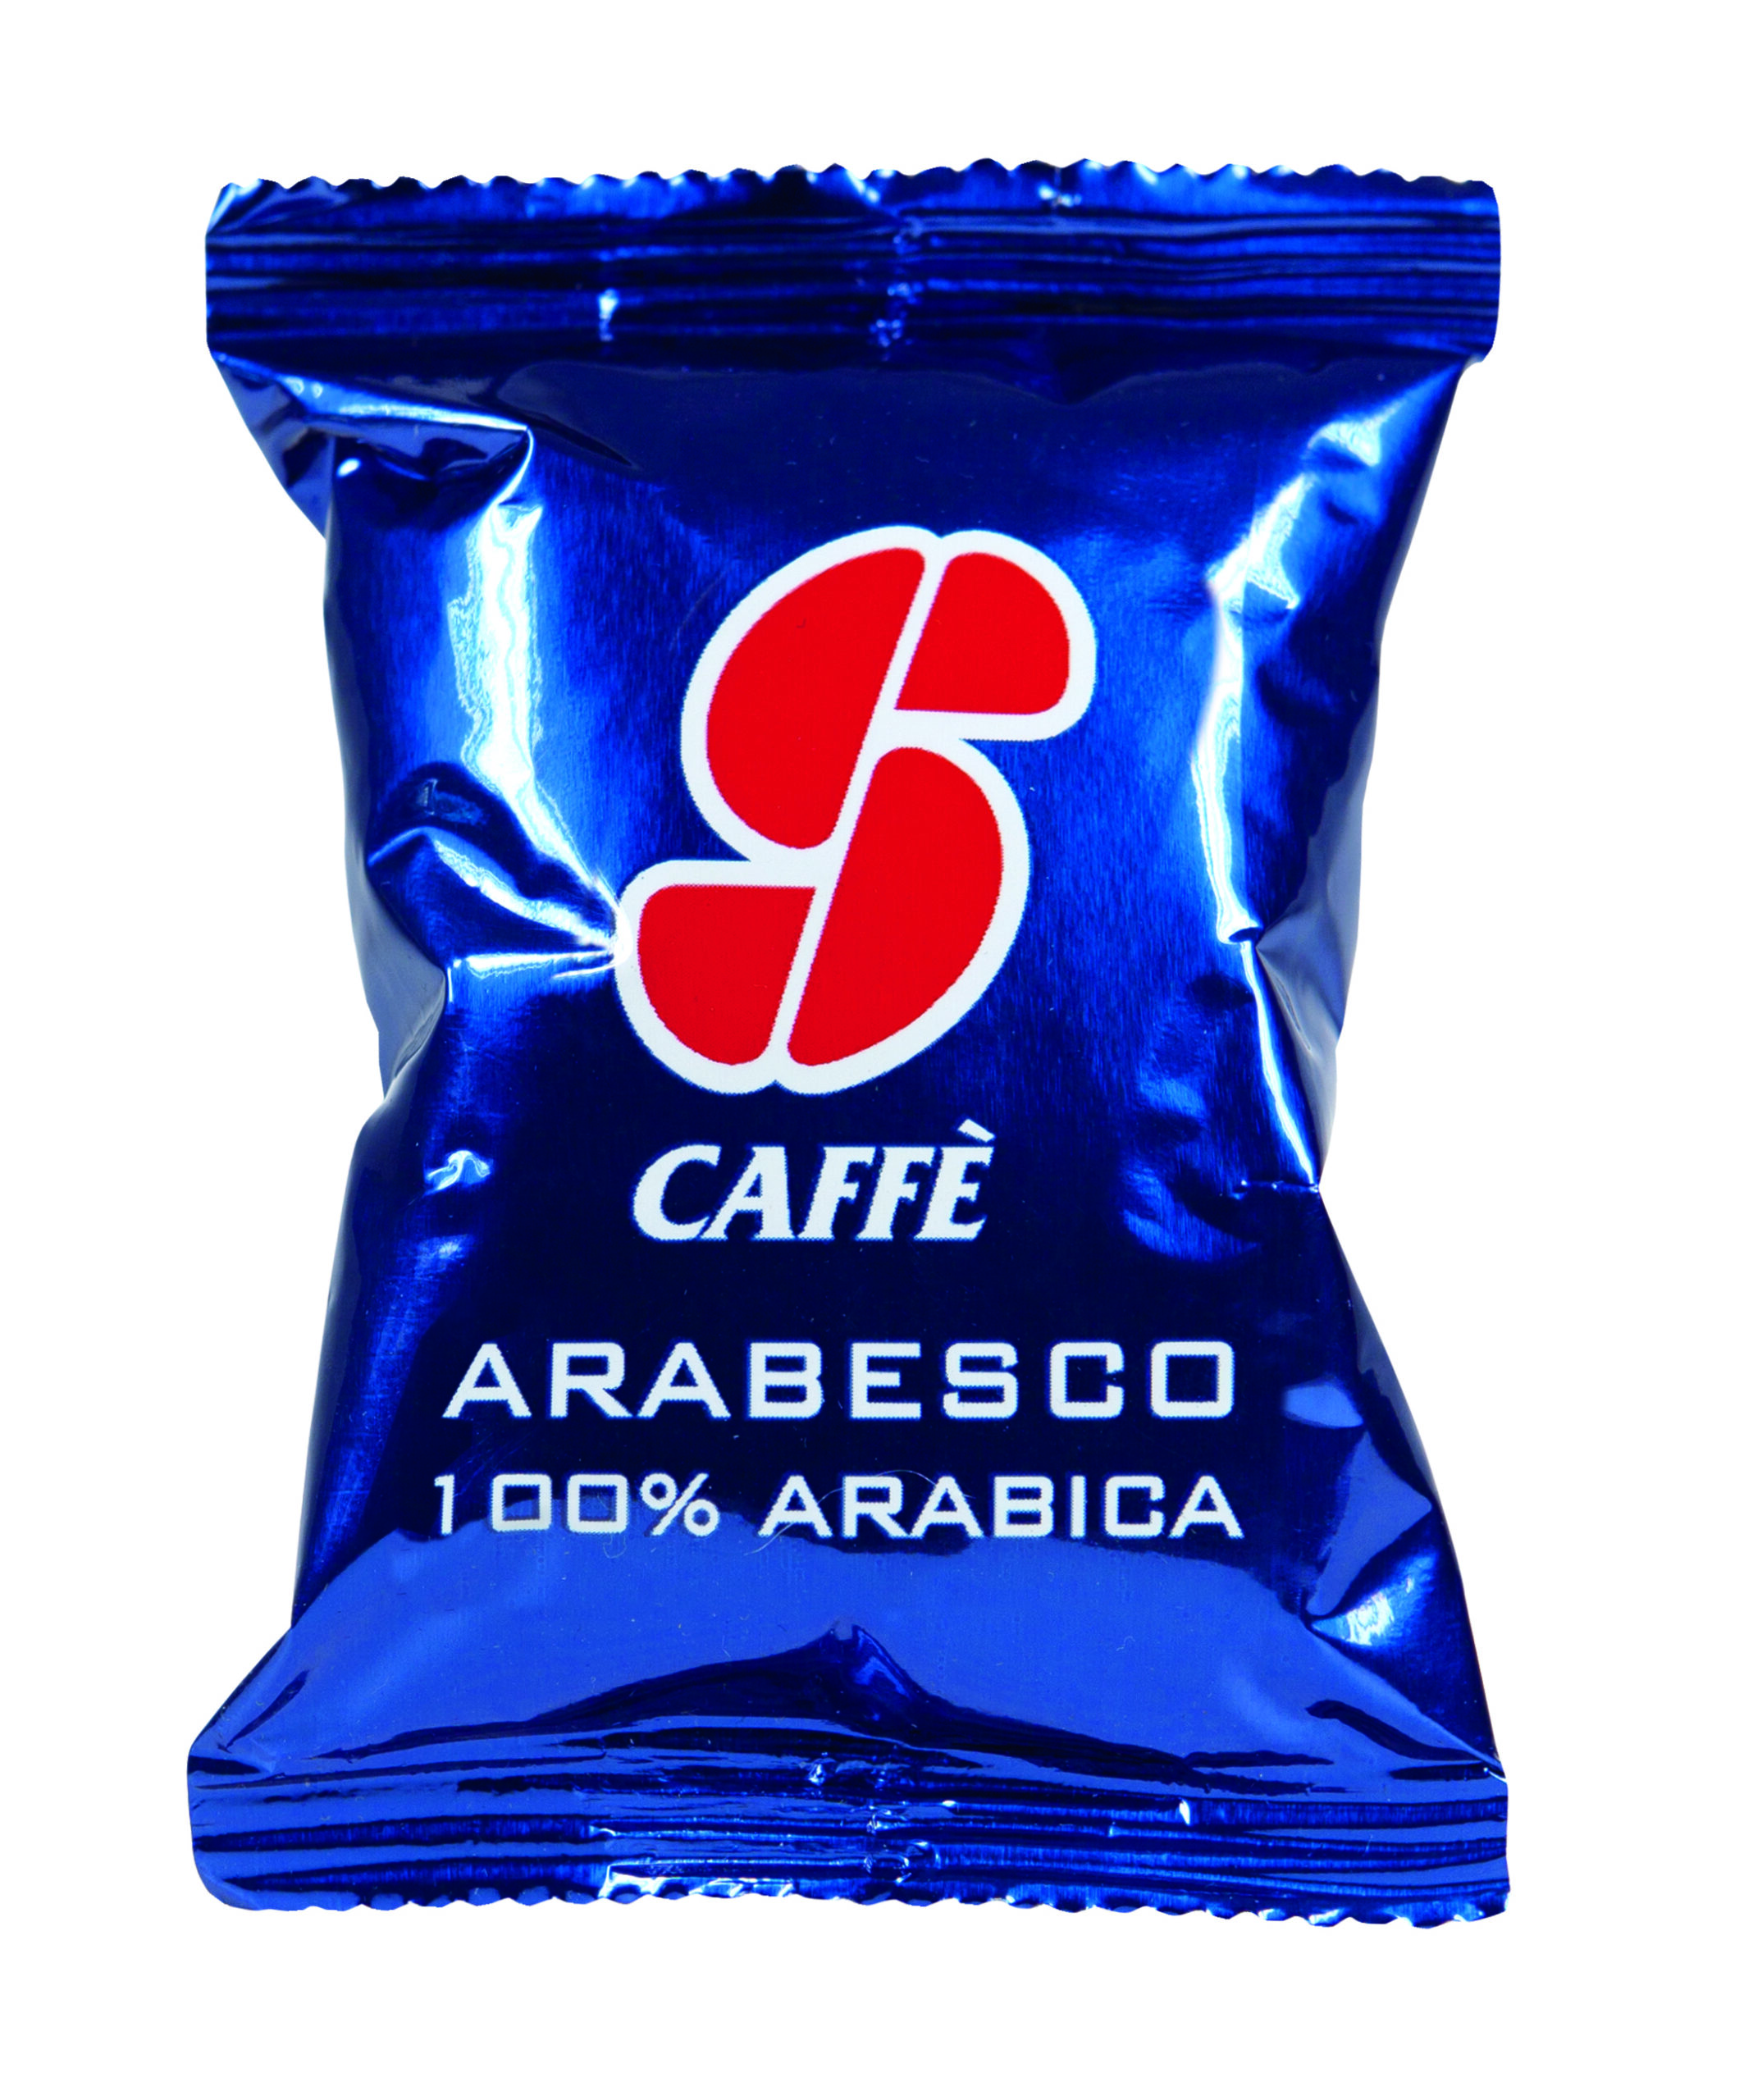 Capsula Caffe 39 Arabesco Essse Caffe 39 Pf2311 78710 a